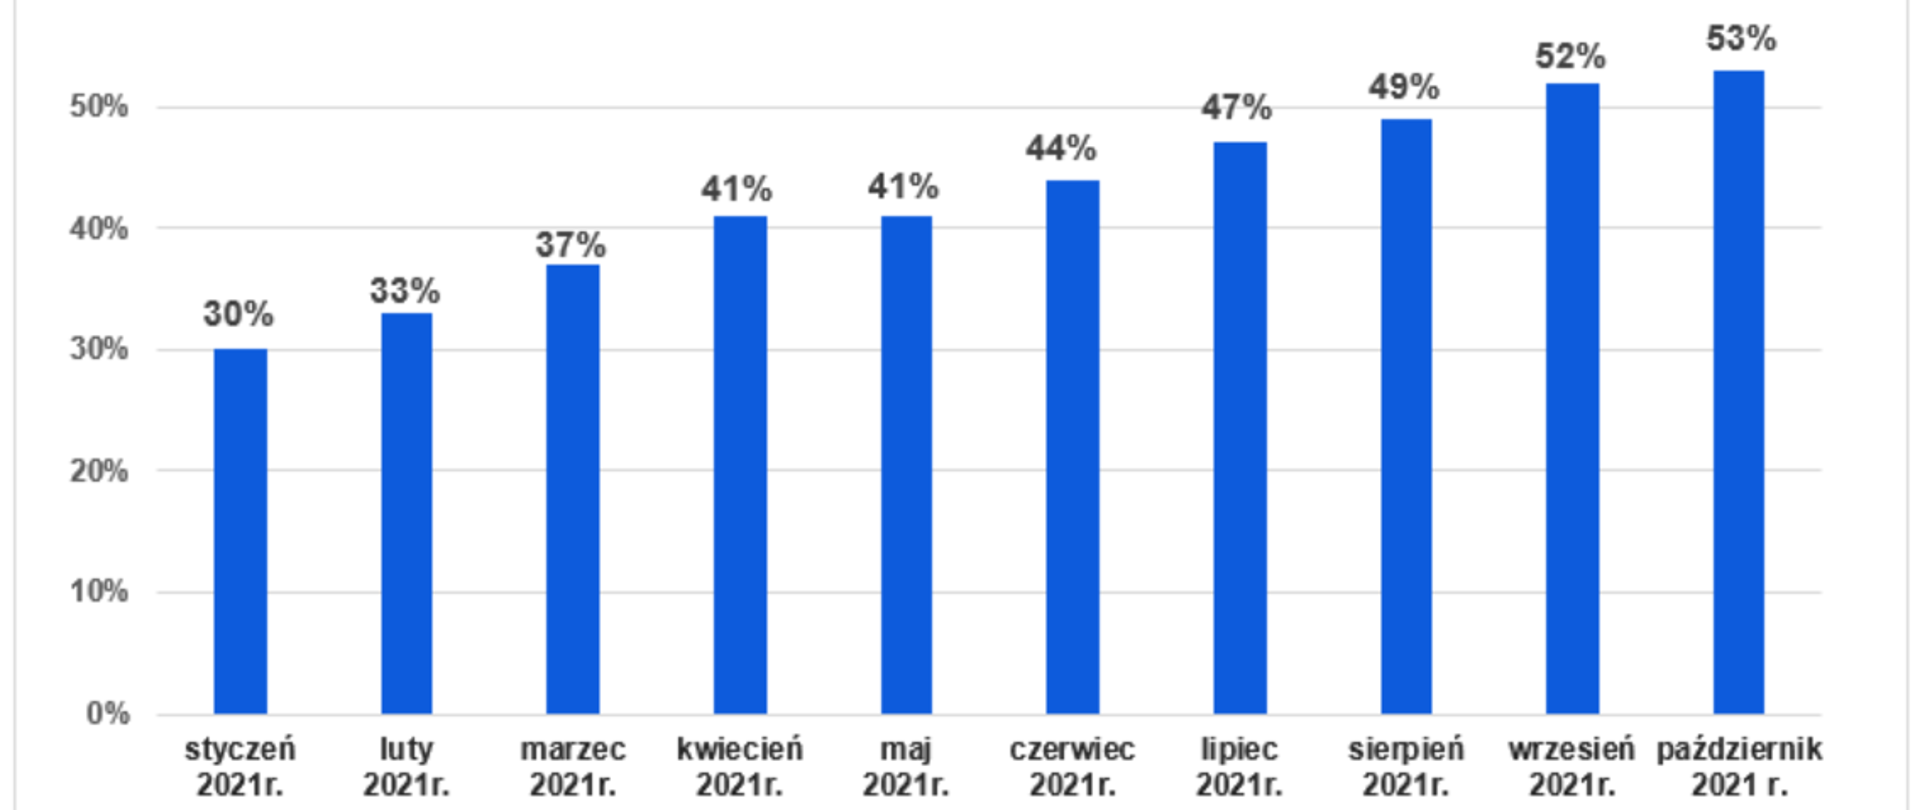 Wykres słupkowy przedstawiający operaty wpływające do PZGiK w formie elektronicznej od stycznia do października 2021 r. W styczniu 30 % operatów wpływało w formie elektronicznej, w lutym - 33%, w marcu - 37%, w kwietniu - 41%, w maju - 41%, w czerwcu - 44%, w lipcu - 47%, w sierpniu - 49%, we wrześniu - 52%, w październiku 53%. 